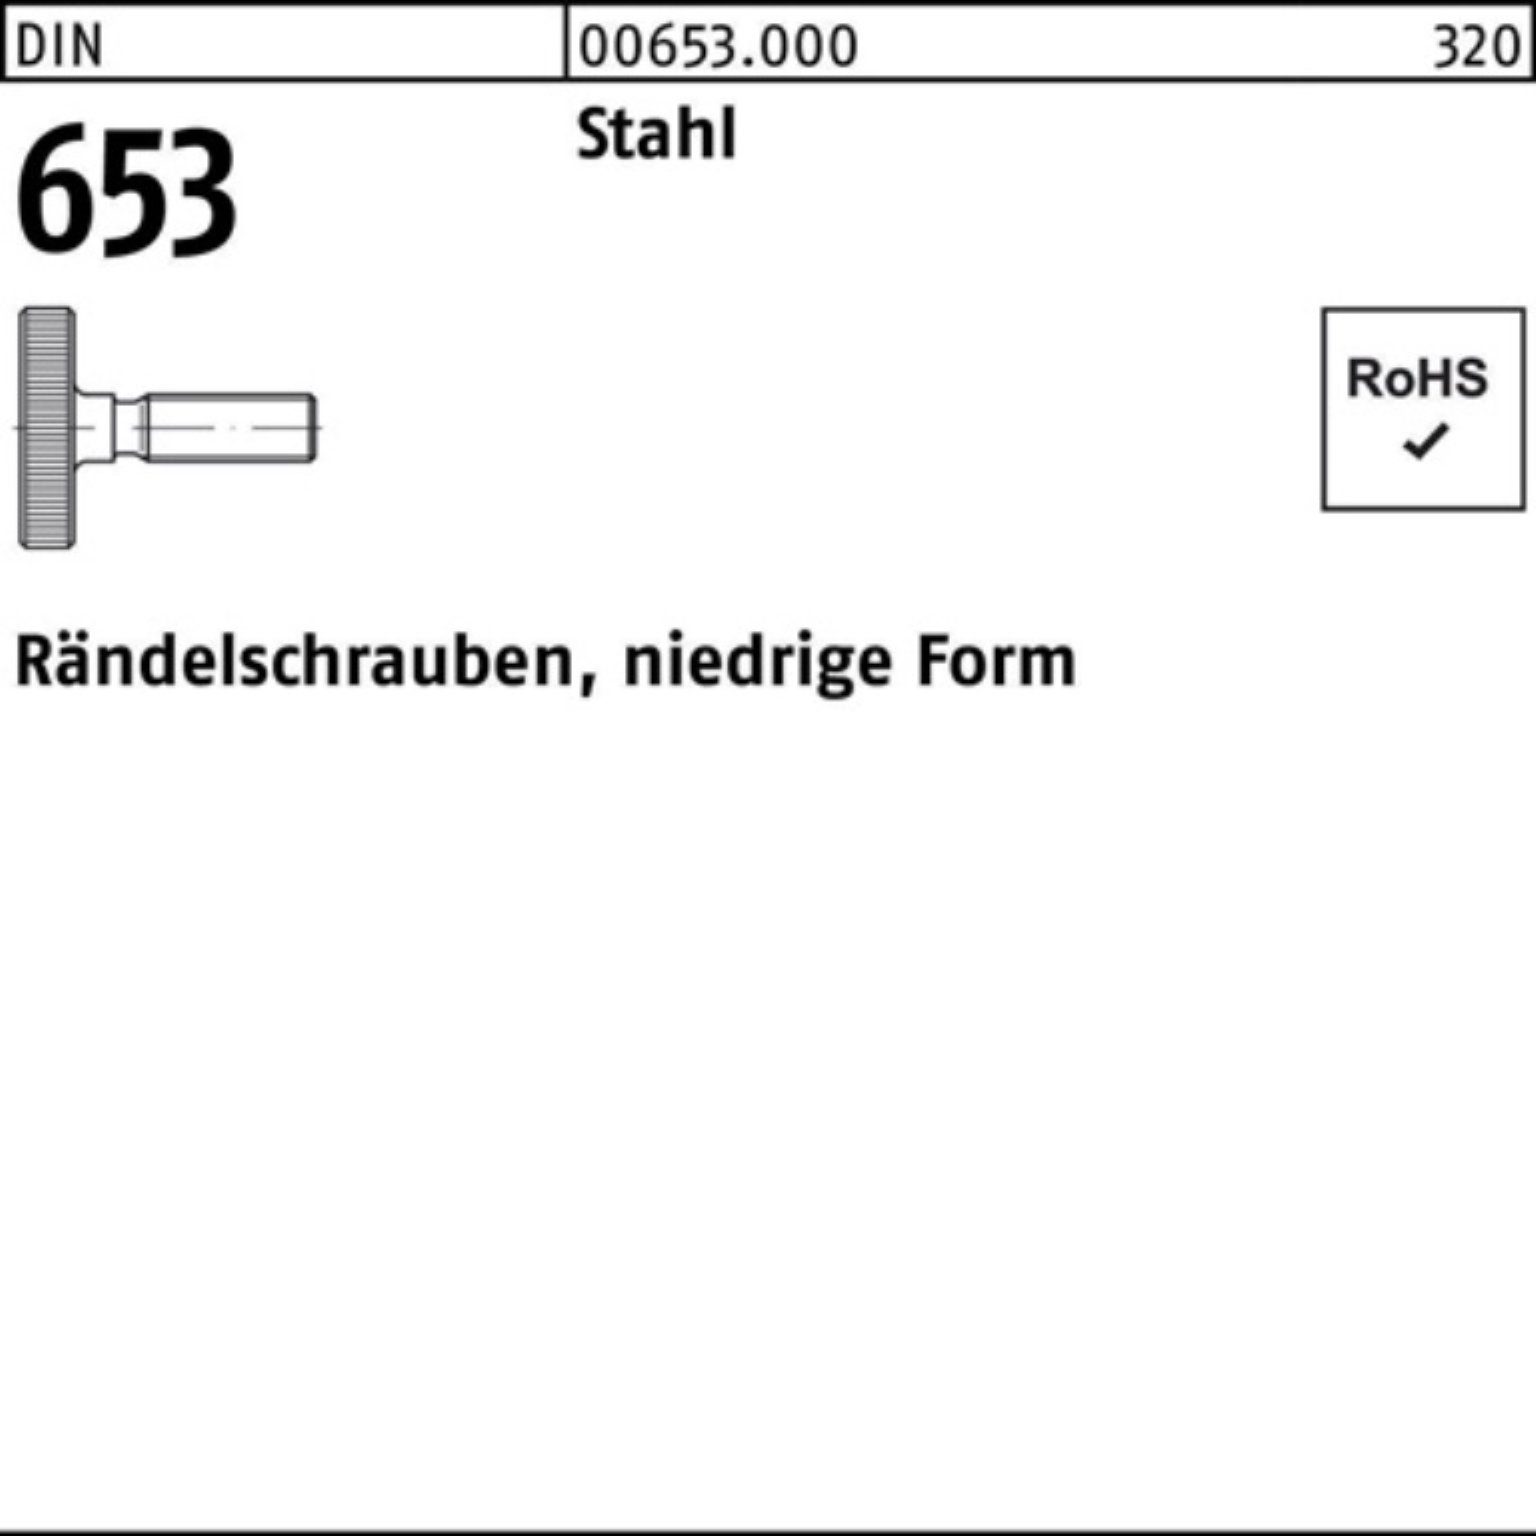 Reyher Schraube 100er Pack Rändelschraube DIN 653 niedrige FormM10x 25 Stahl 10 Stüc